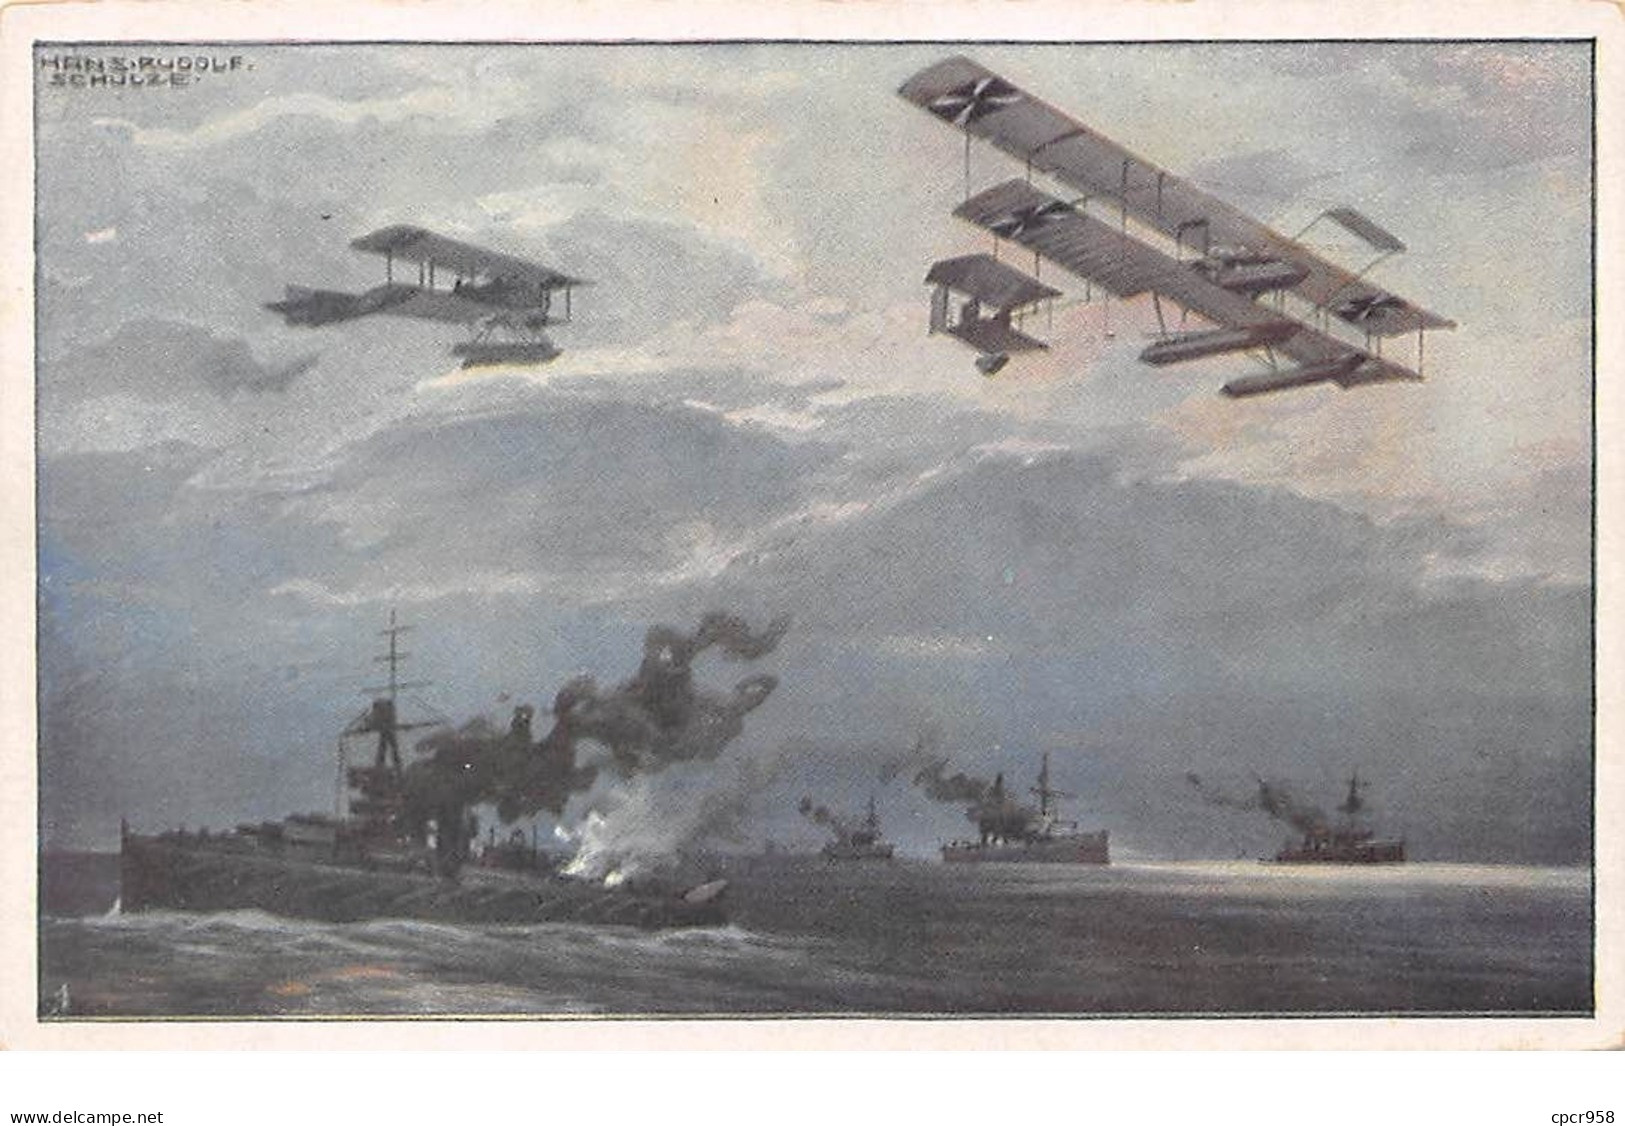 Illustrateur - N°68289 - Schulze - Avions Au-dessus De Bateaux De Guerre - Schulze, Hans Rudolf